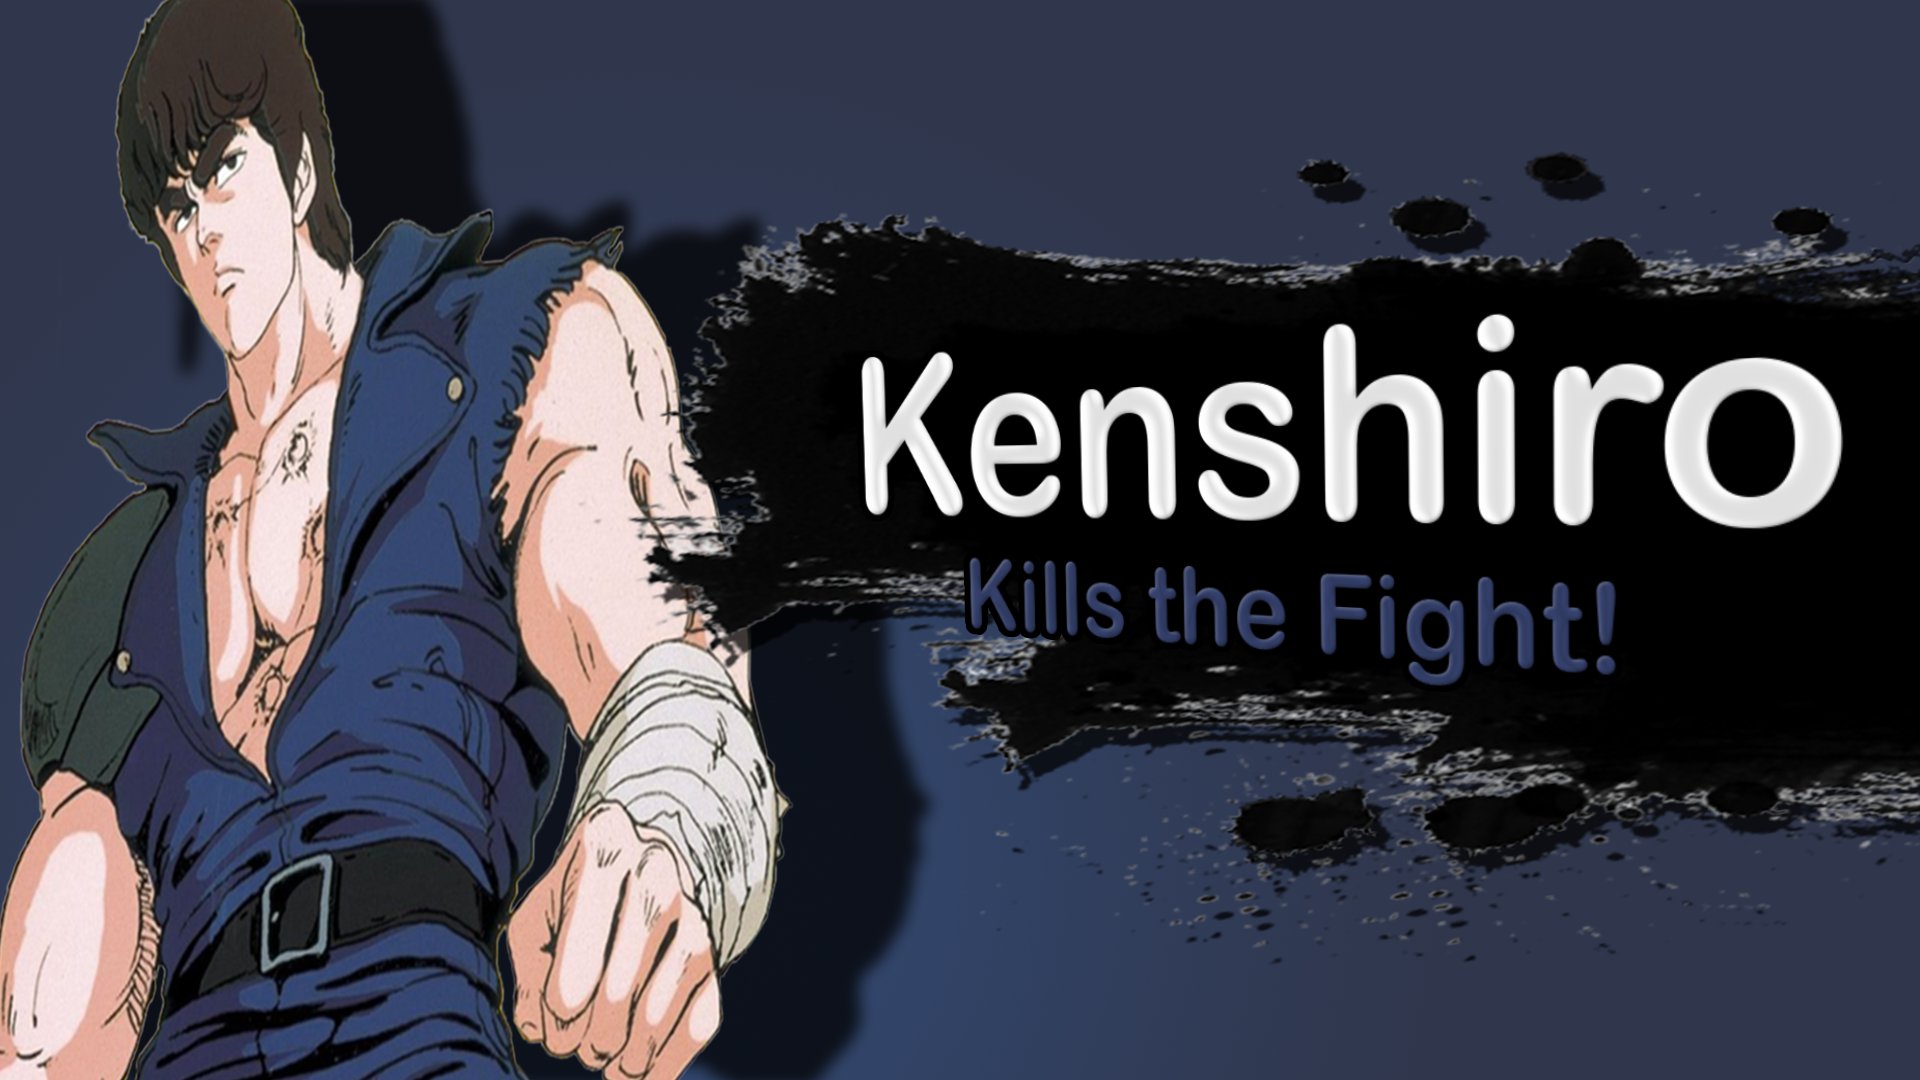 Kenshiro confrimed for Smash Bros.